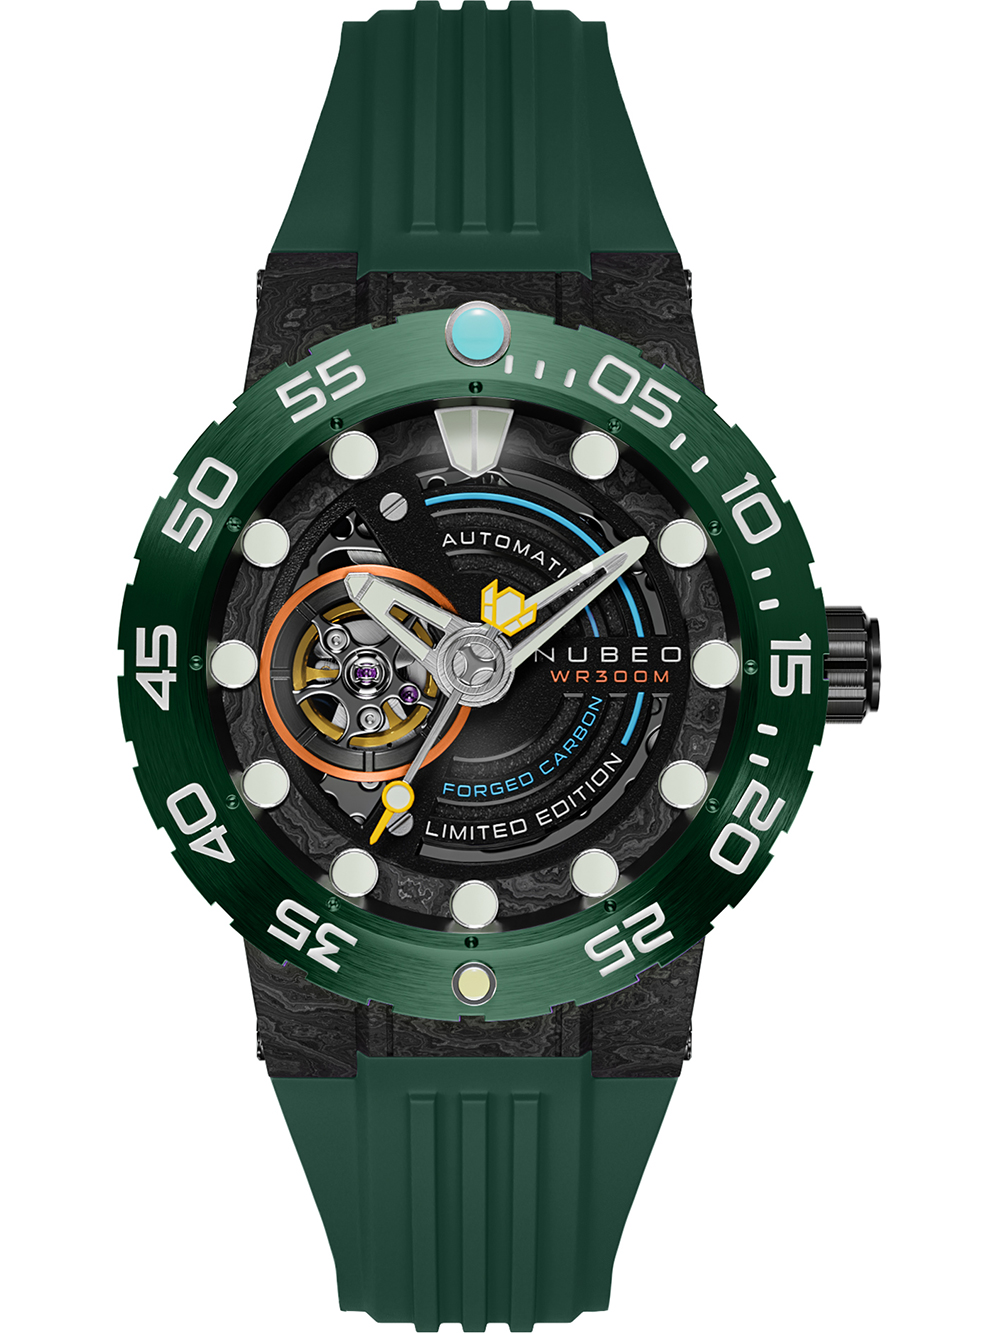 Pánské hodinky Nubeo NB-6085-04 Opportunity